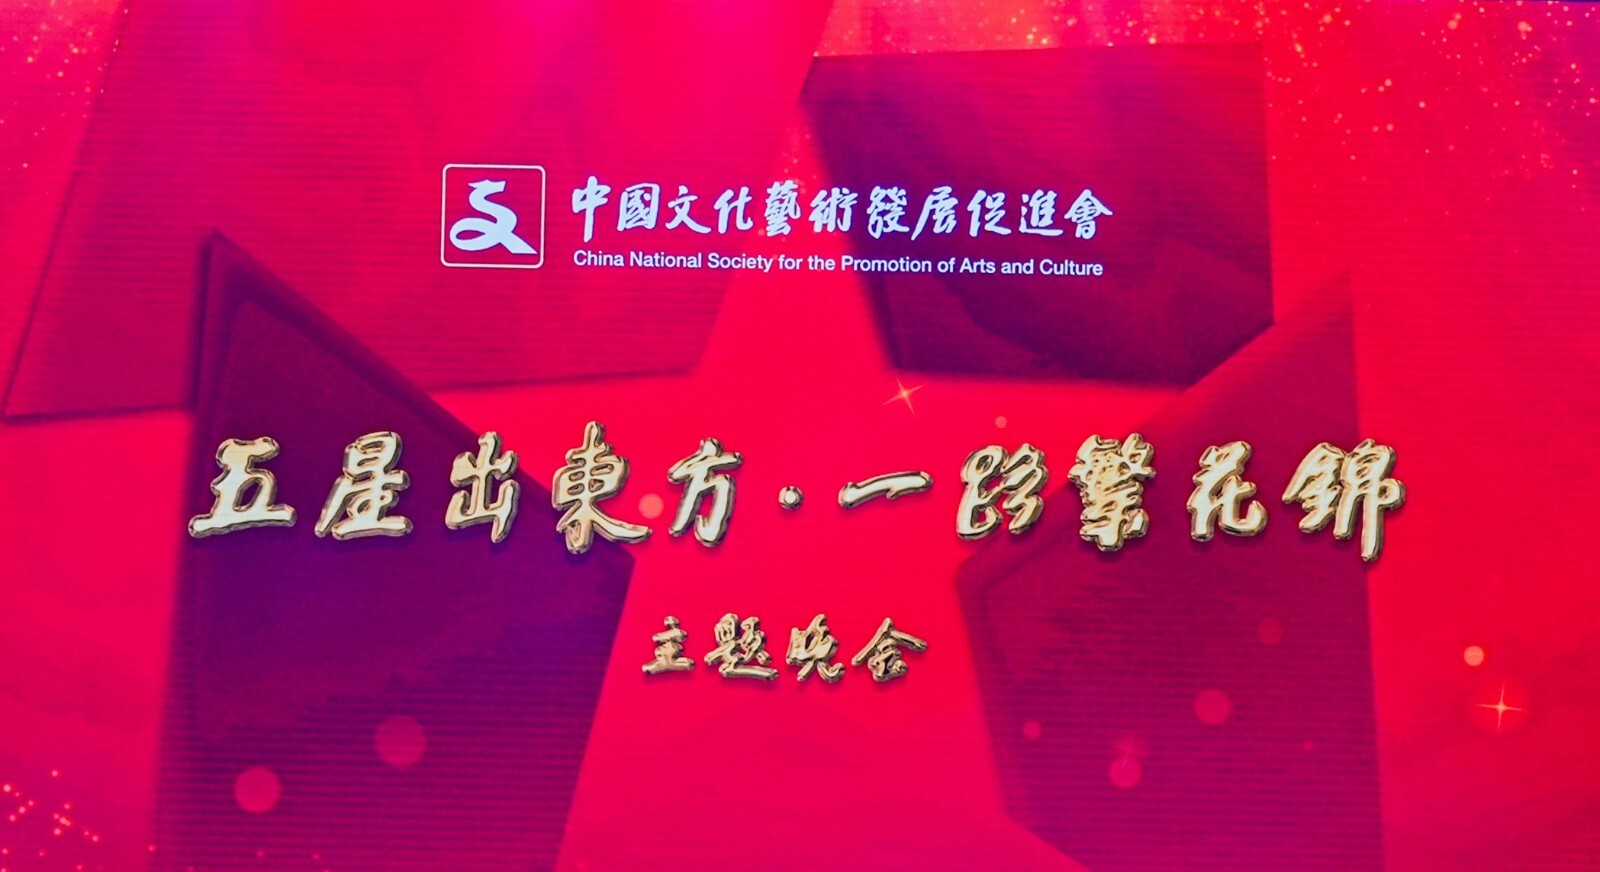 《五星出东方·一路繁花锦》中国文化艺术发展促进会三十年庆典主题晚会在京举办